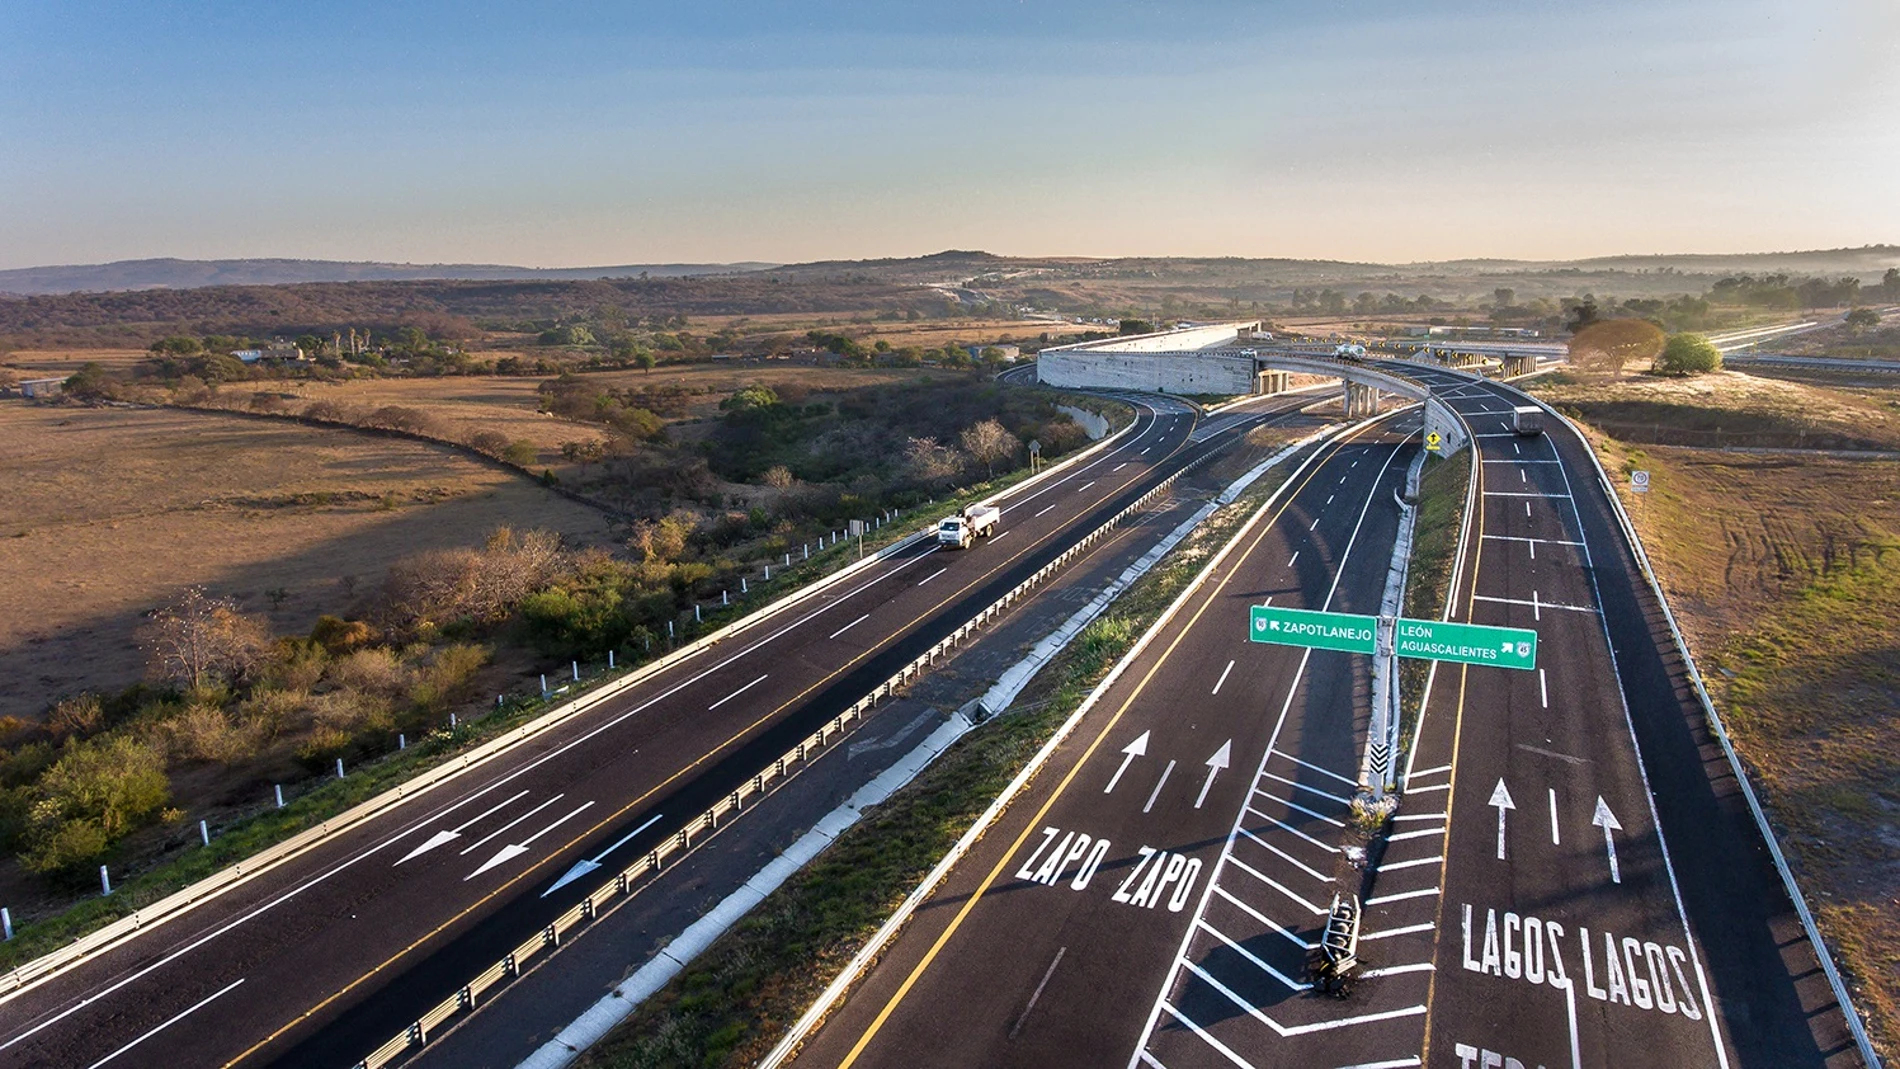 Economía/Empresas.- Abertis compra RCO, uno de los mayores grupos de autopistas de México, por 1.500 millones